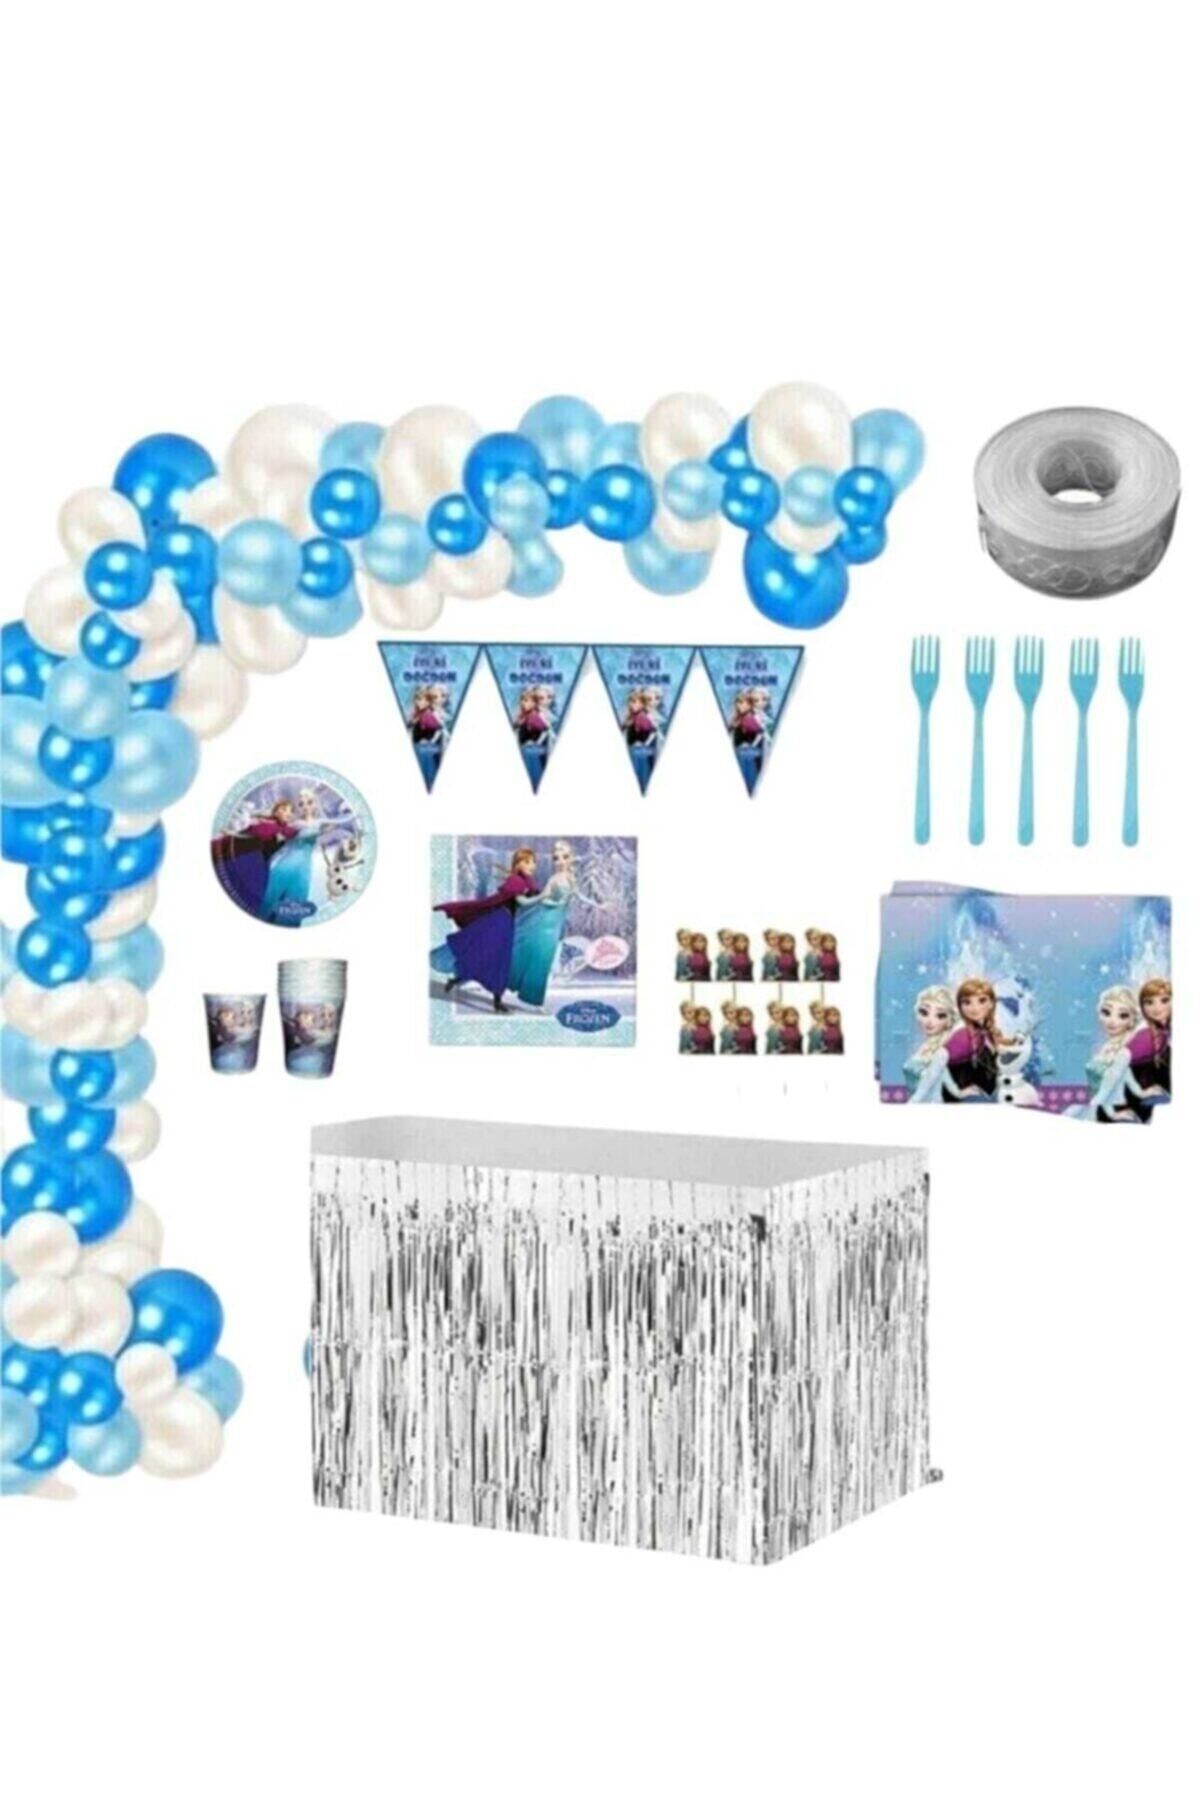 CAVAŞ sun hat Mercansüs Frozen & Elsa 8 Kişilik Hazır Lüks Doğum Günü Parti Seti